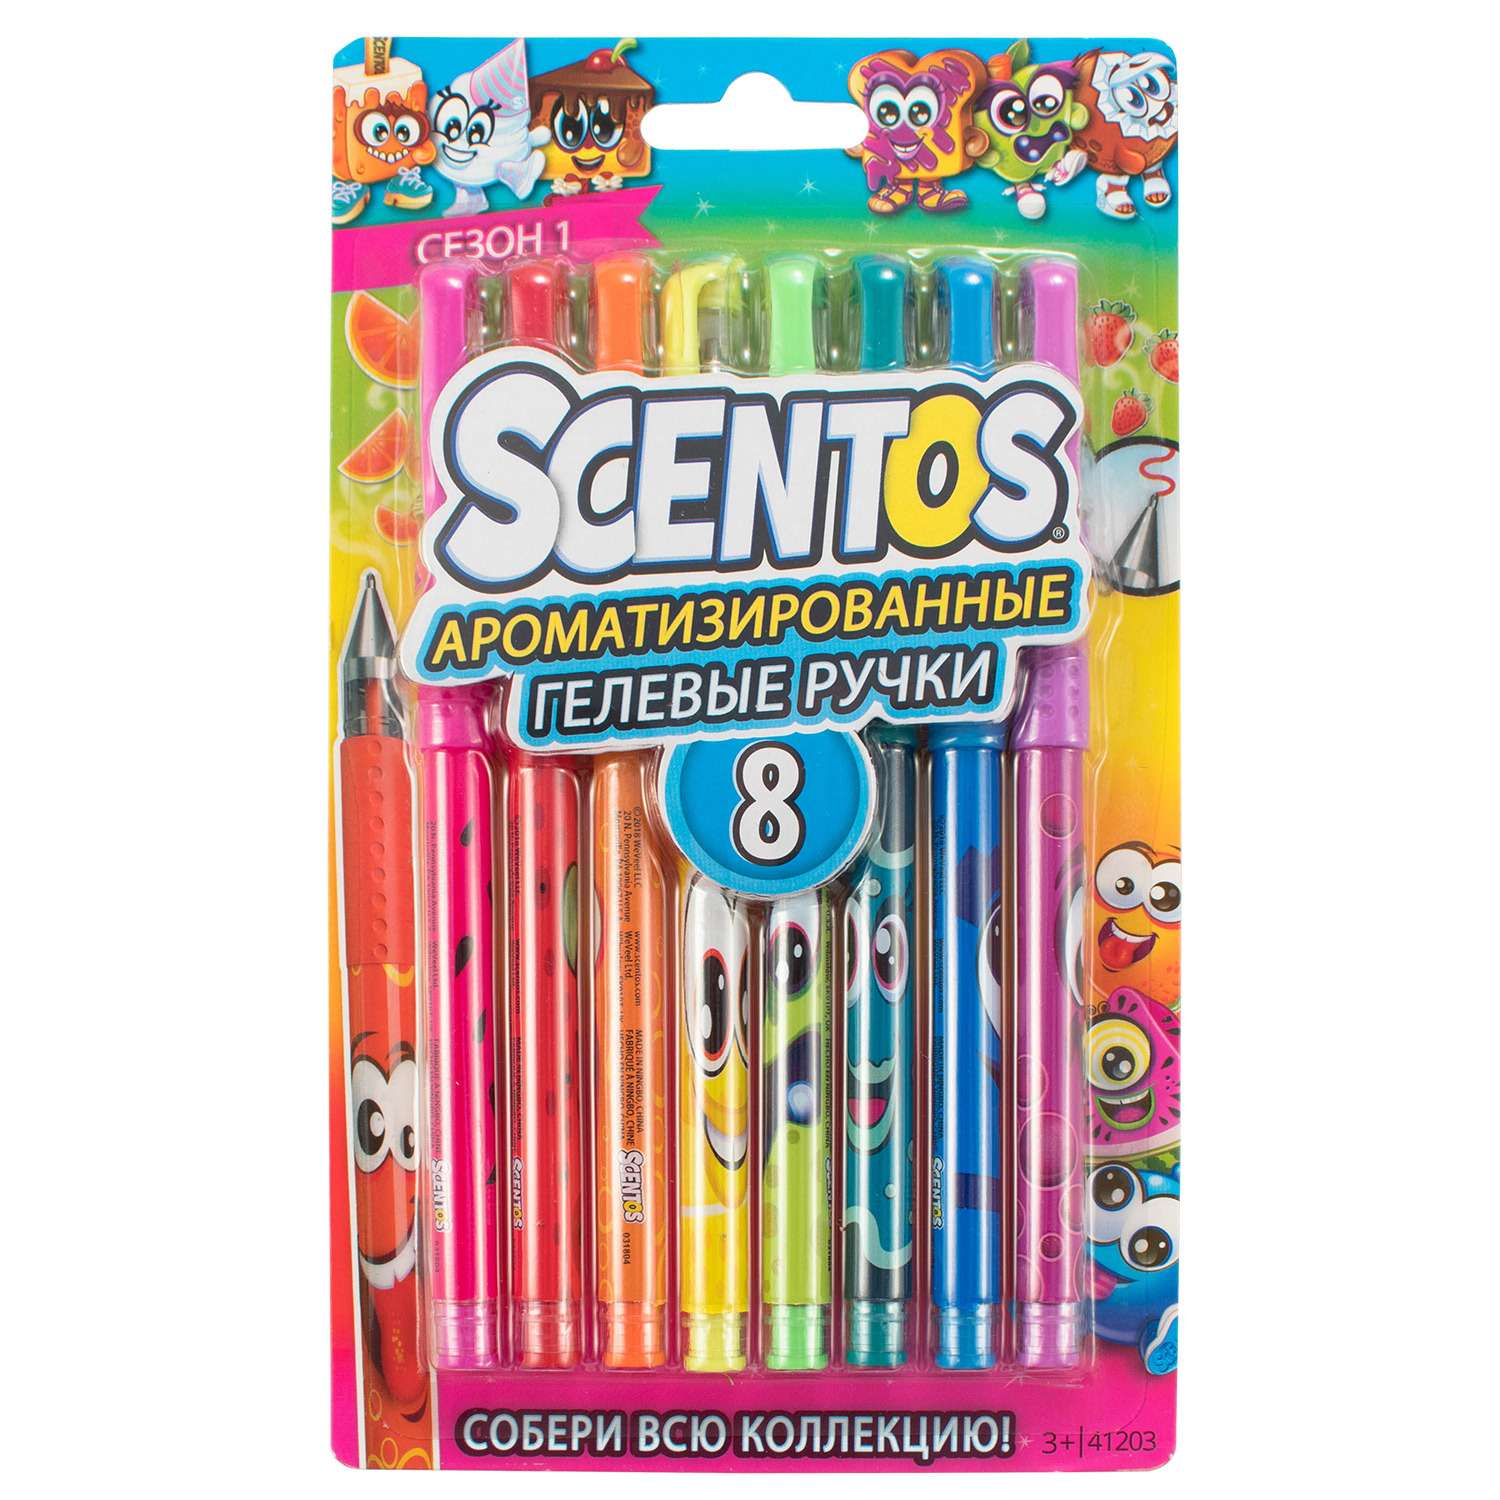 Ручки гелевые Scentos ароматизированные 8шт 41203 - фото 1